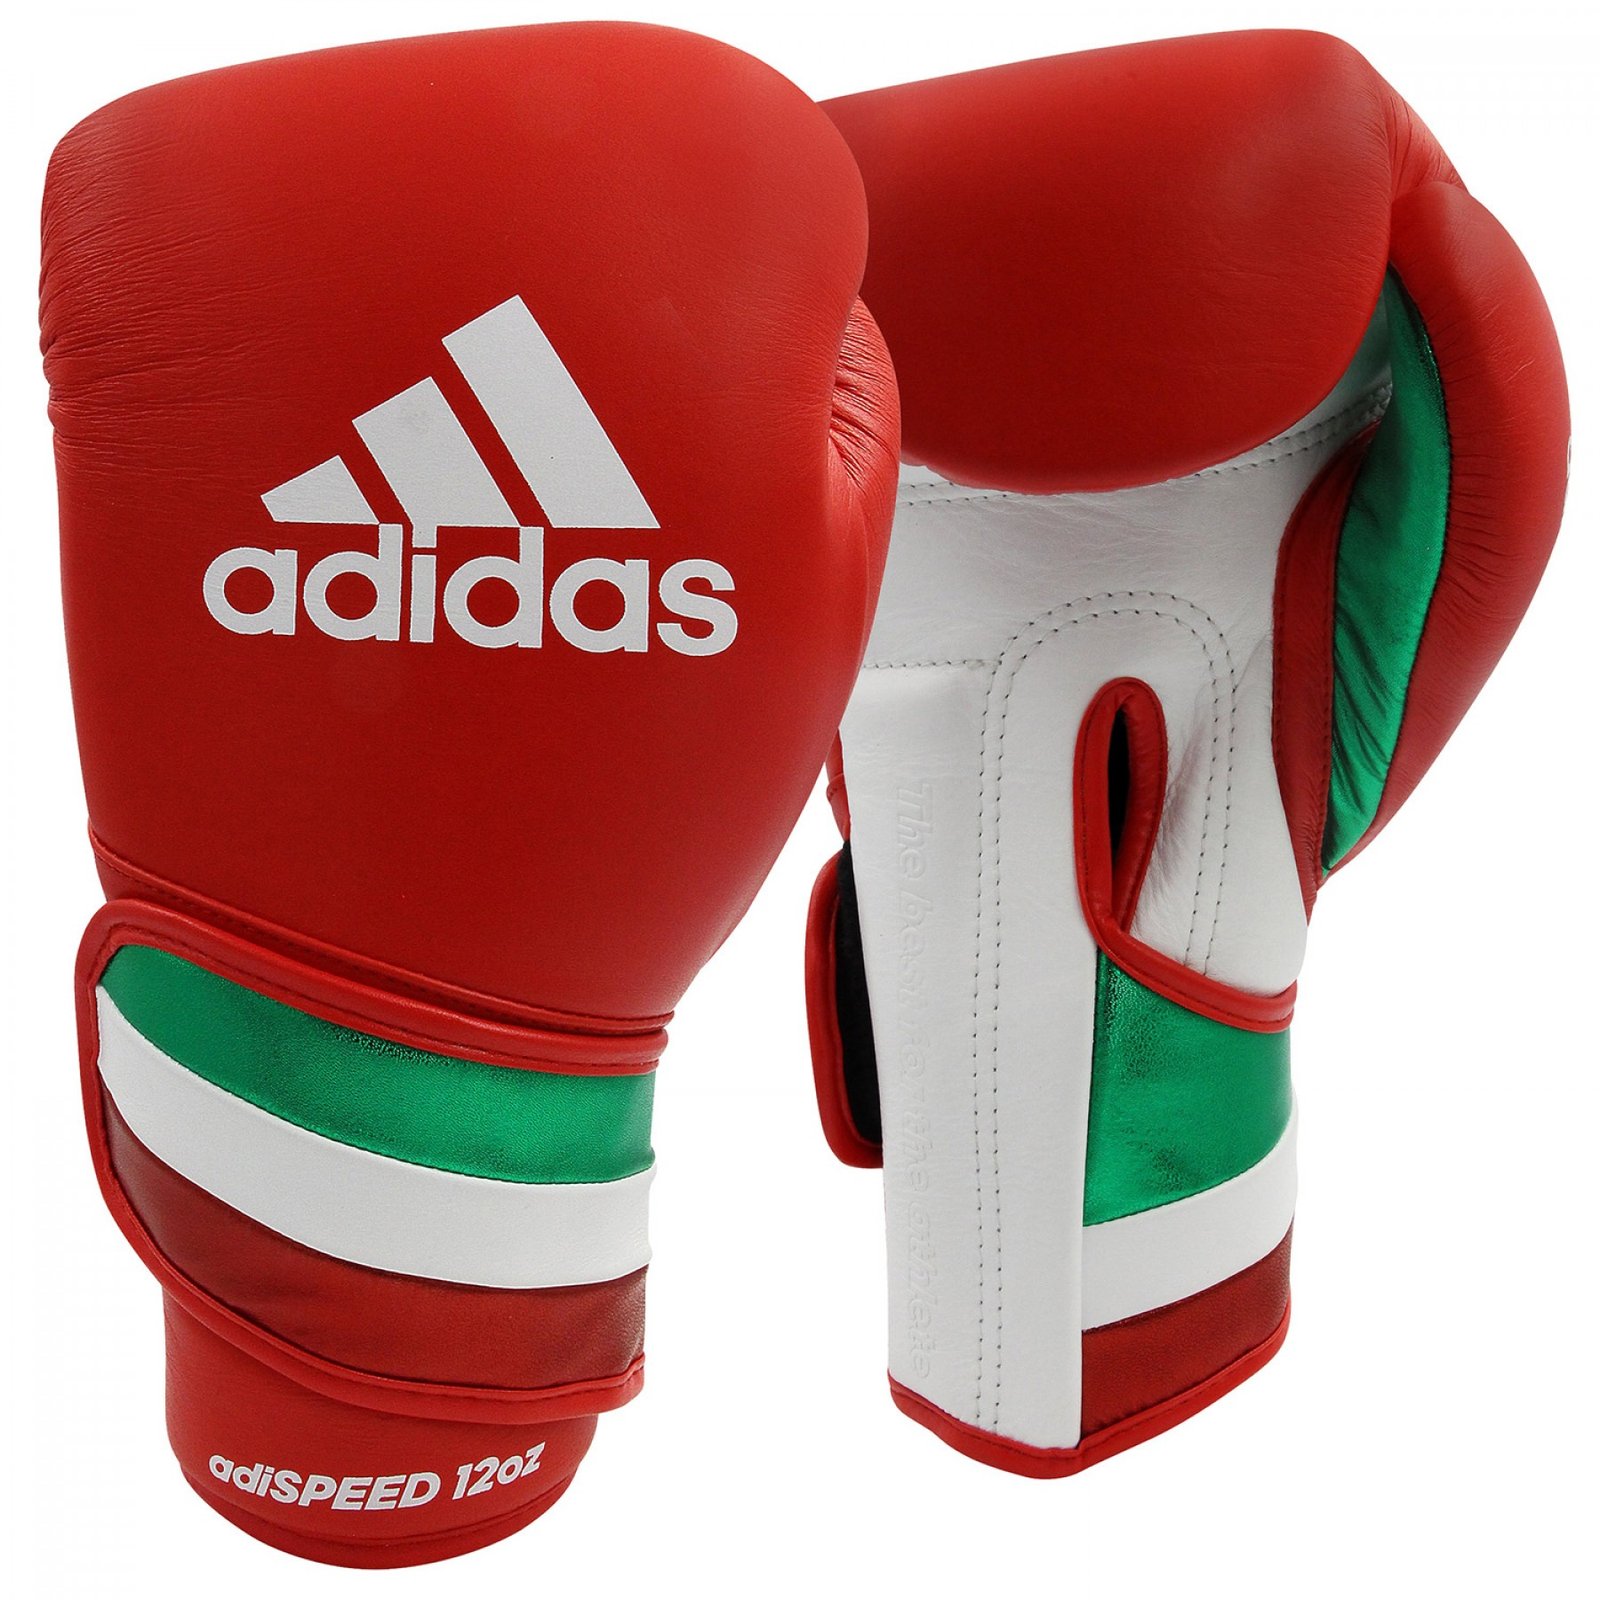 Адидас бокс. Adidas ADISPEED 501. Перчатки адидас боксерские 10. Снарядные перчатки адидас. Боксерские перчатки adidas Speed.